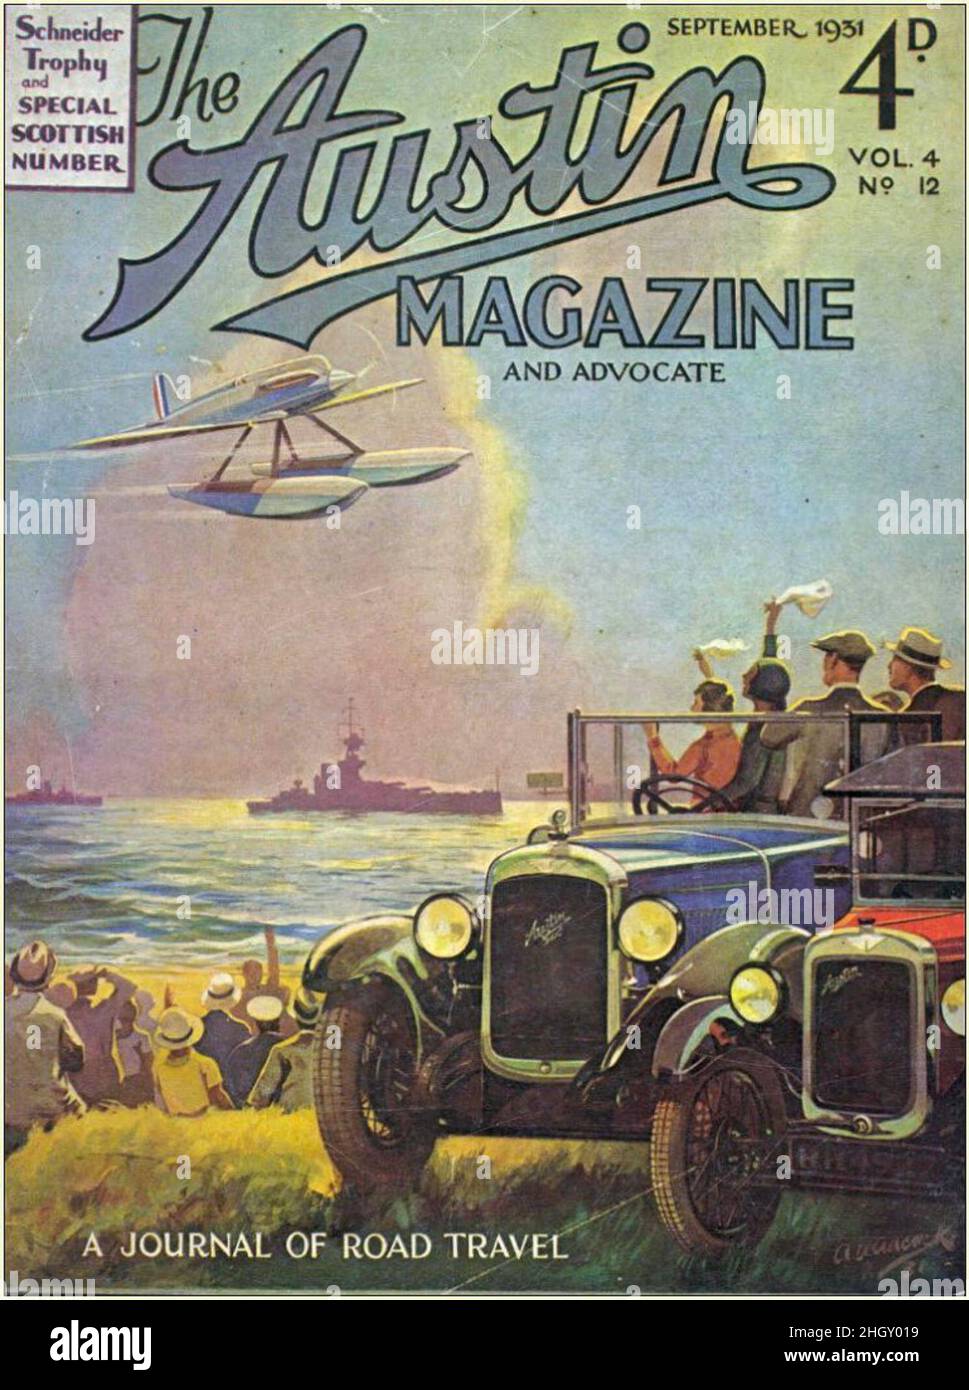 Une édition vintage 1931 du magazine Austin, présentant un avion du trophée Schneider Banque D'Images